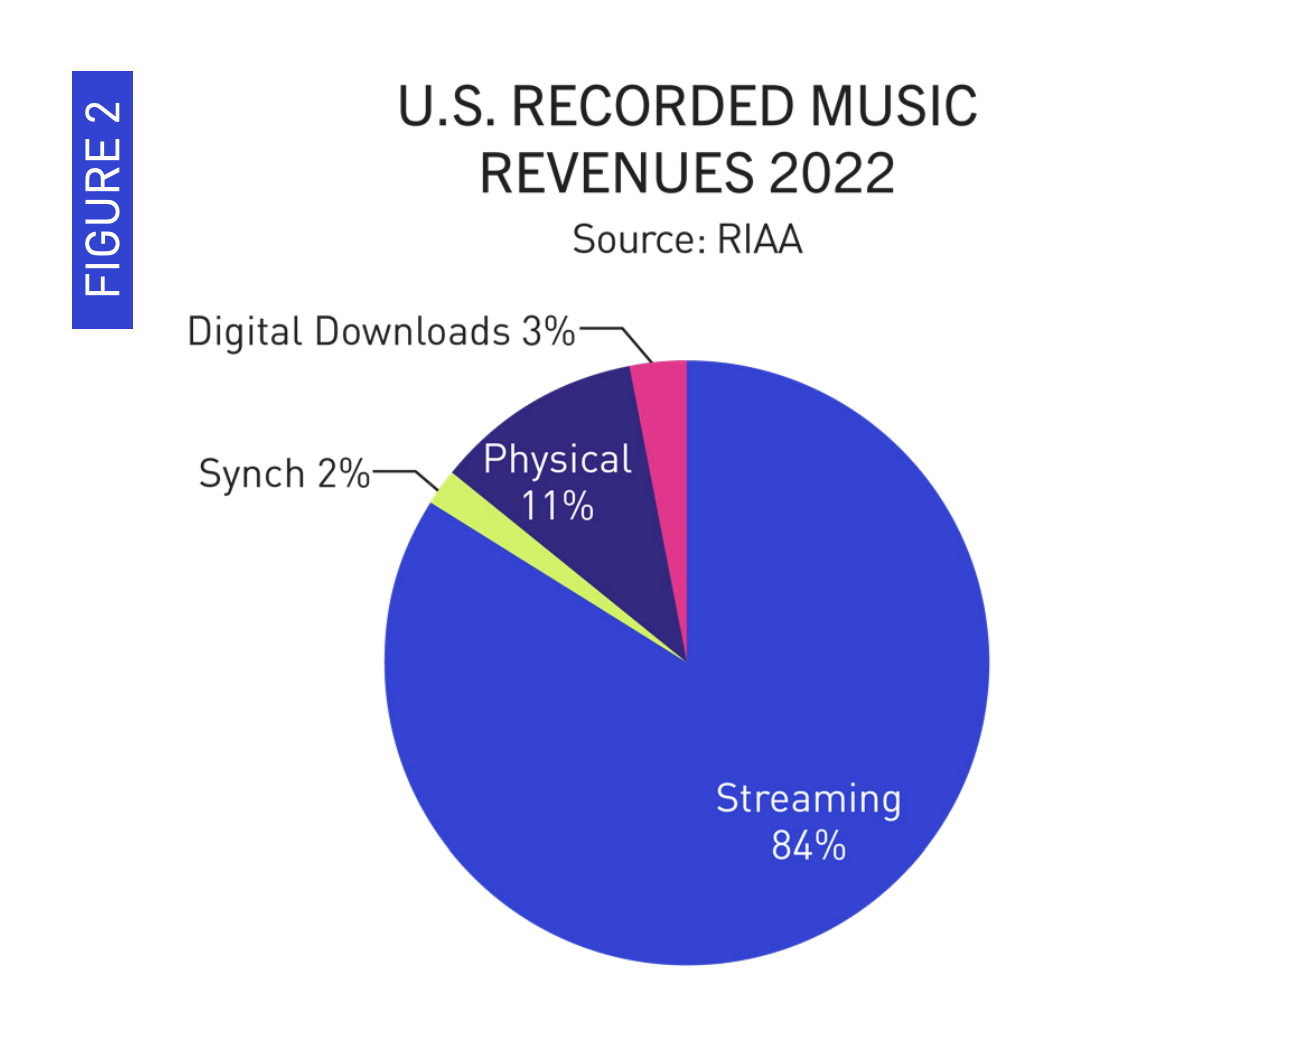 Le streaming représente toujours la grande majorité des revenus de l'industrie de la musique, bien que les supports physiques se maintiennent alors même que la musique téléchargeable disparaît.